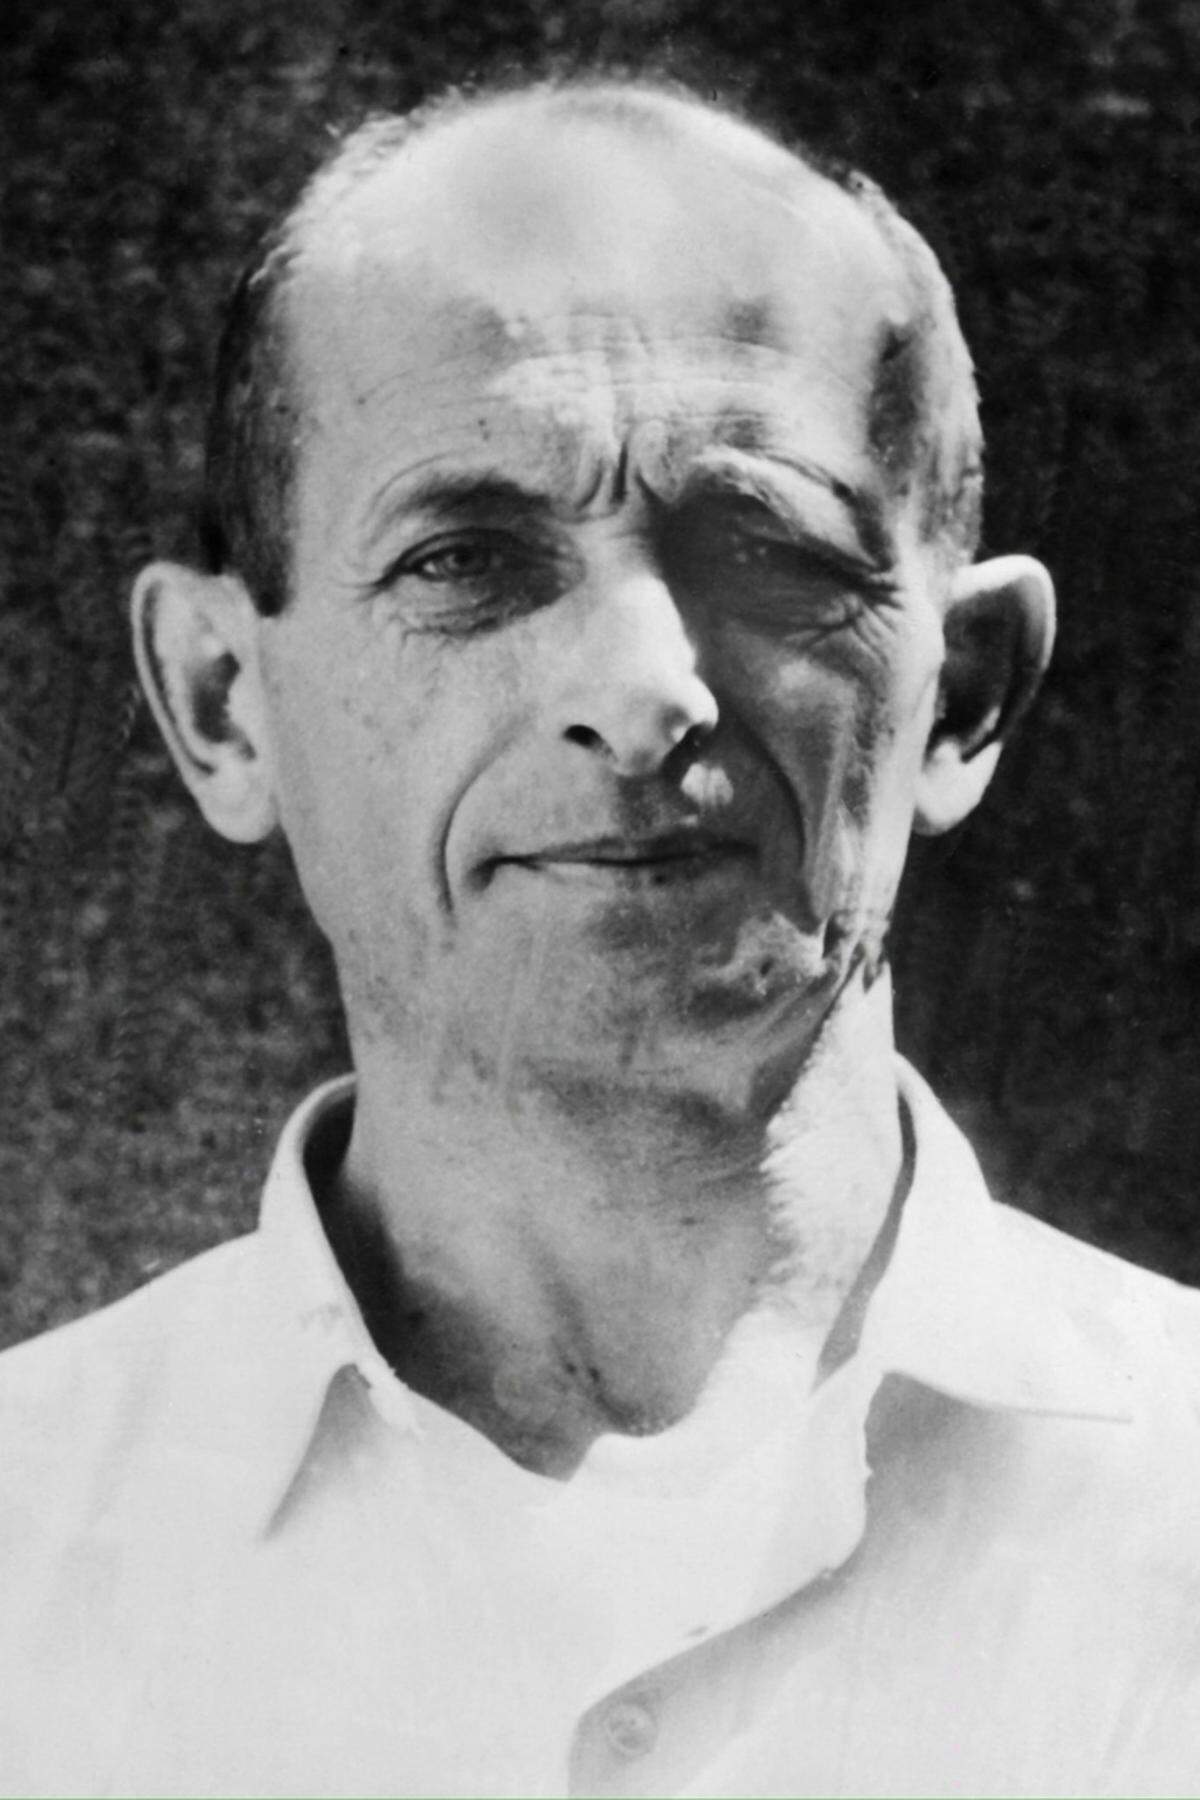 Erst im März 1960 schießt ein Agent heimlich ein Foto von Eichmann. Beim Vergleich mit alten Bildern wird klar: „Riccardo Klement“ ist tatsächlich der gesuchte Nazi-Verbrecher Eichmann.